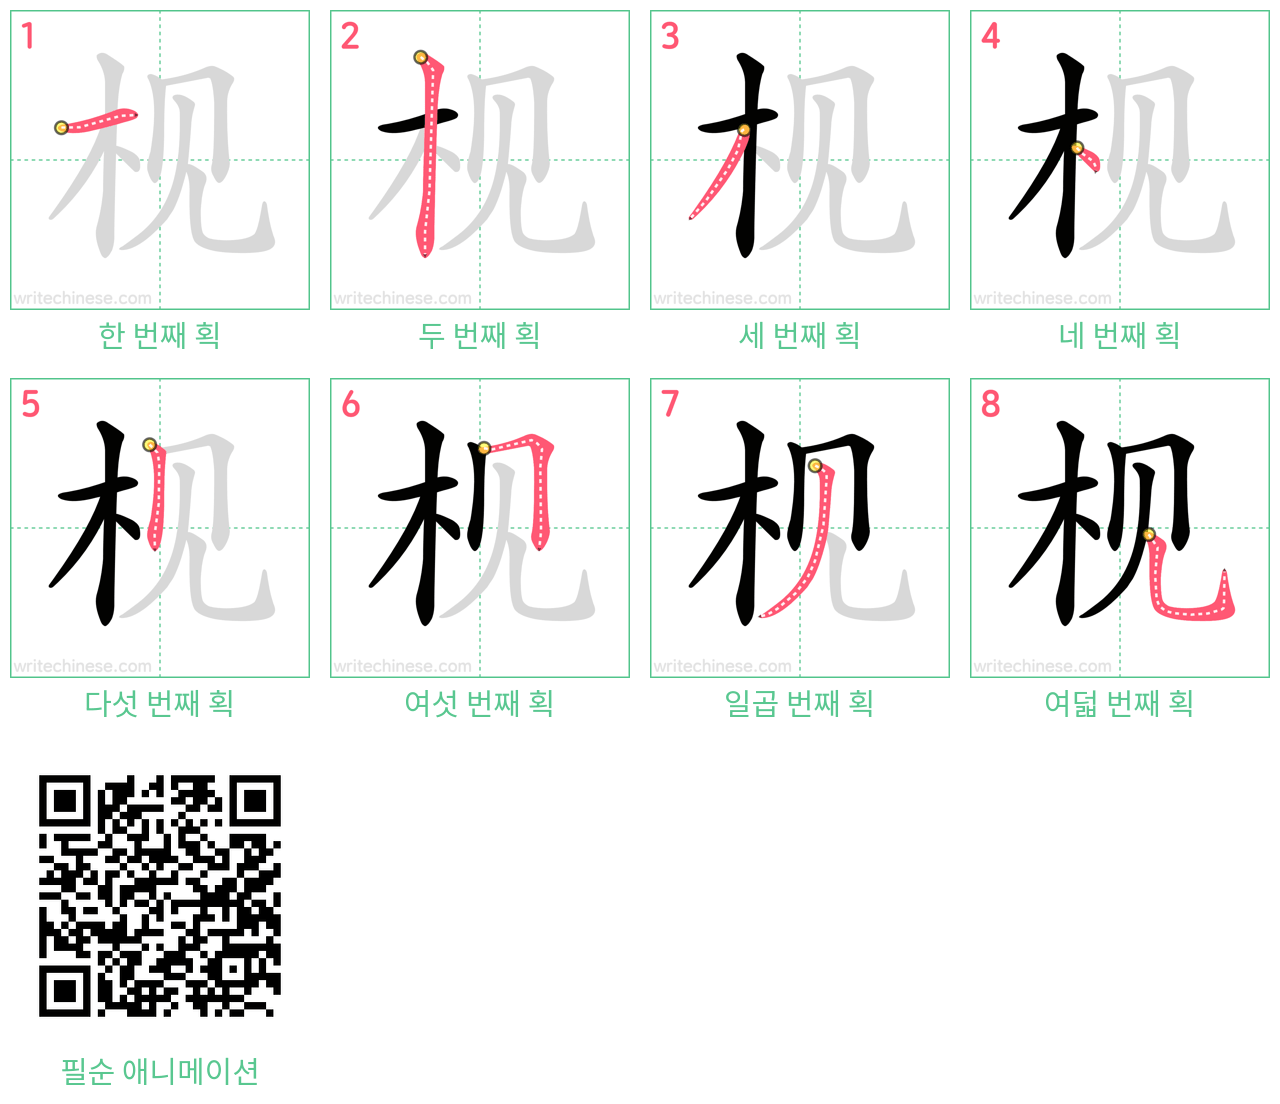 枧 step-by-step stroke order diagrams